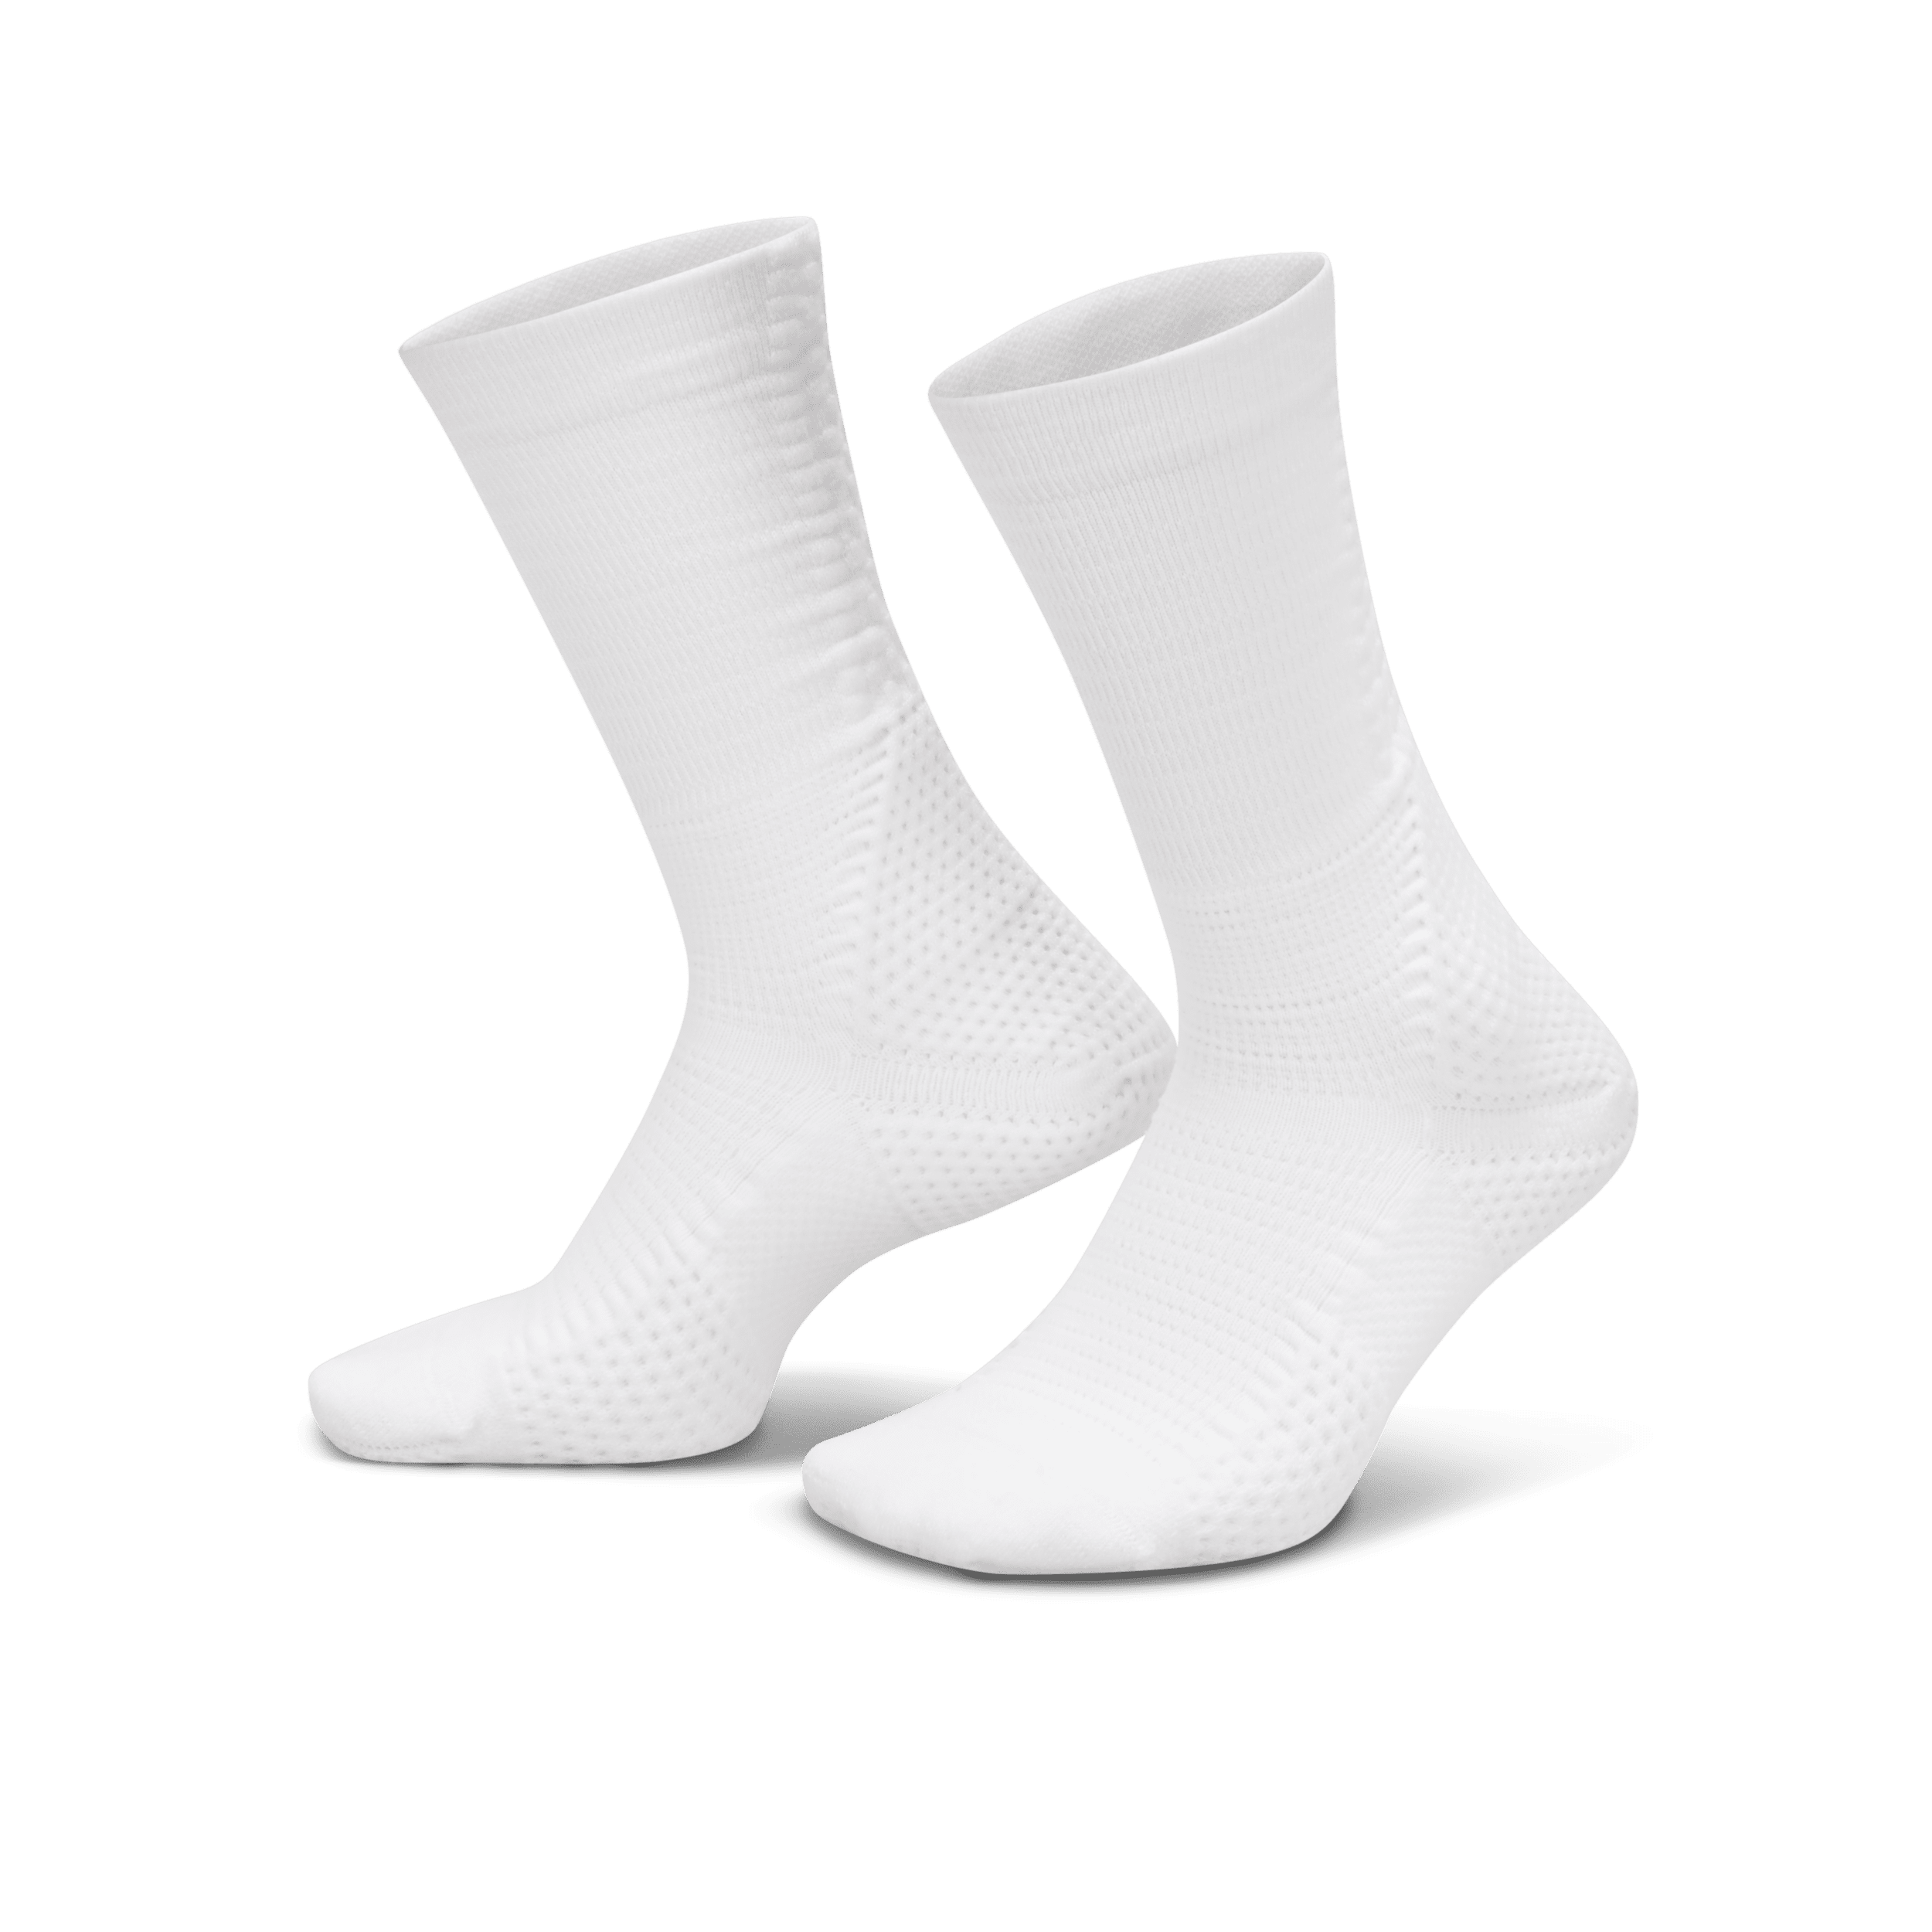 Calze ammortizzate di media lunghezza Dri-FIT ADV Nike Unicorn (1 paio) - Bianco